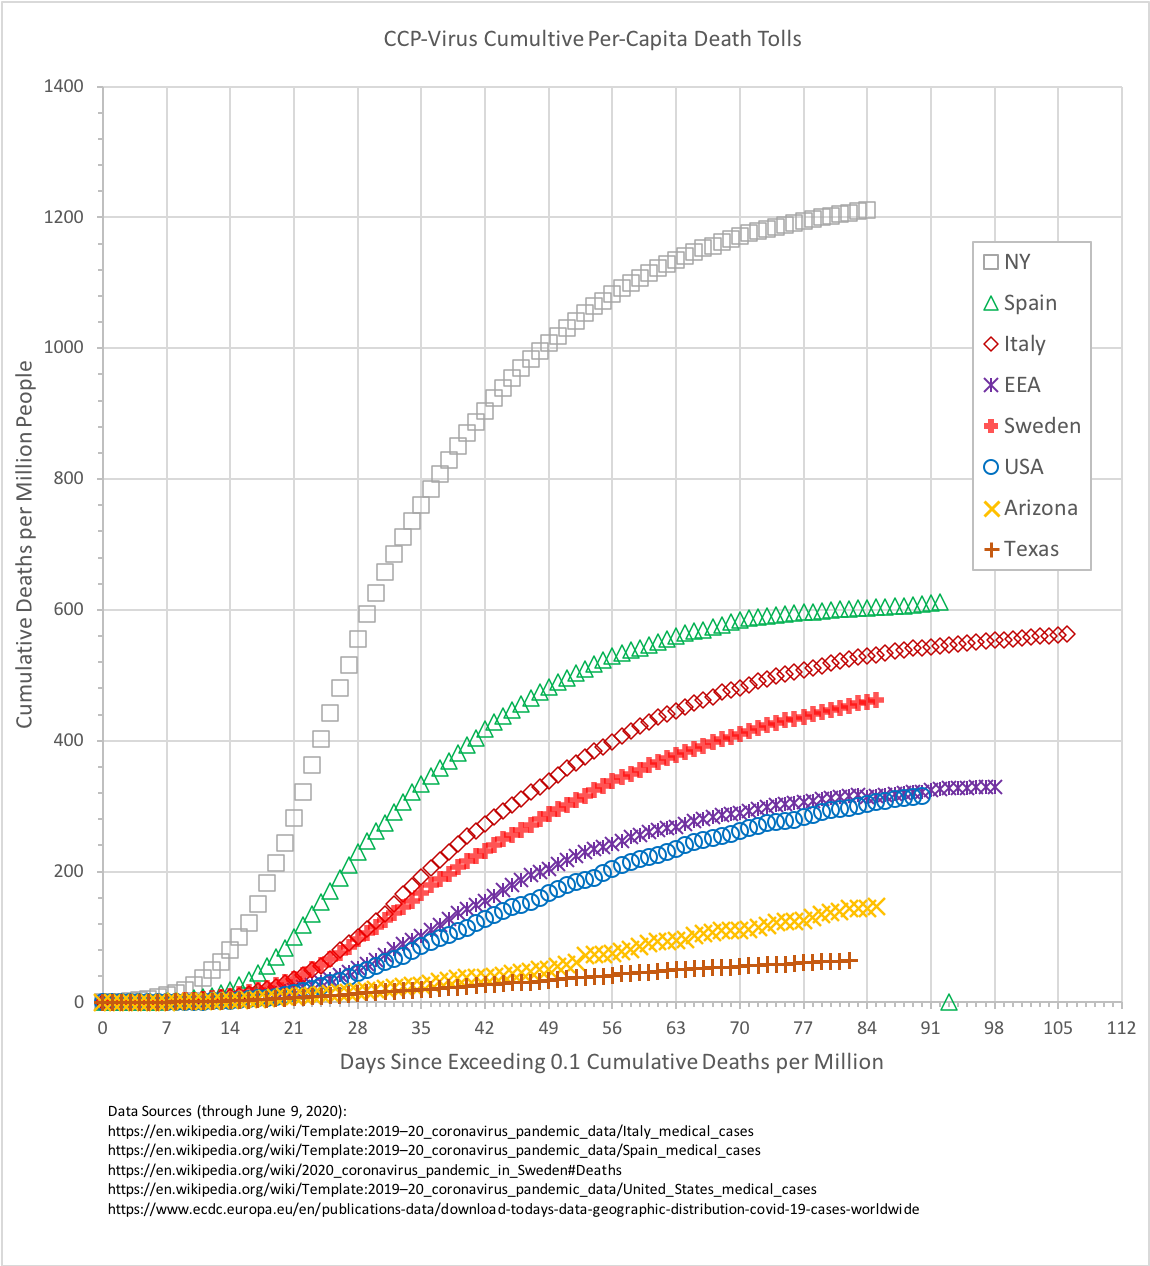 Total Cumulative per Capita Death Toll of the CCP Virus